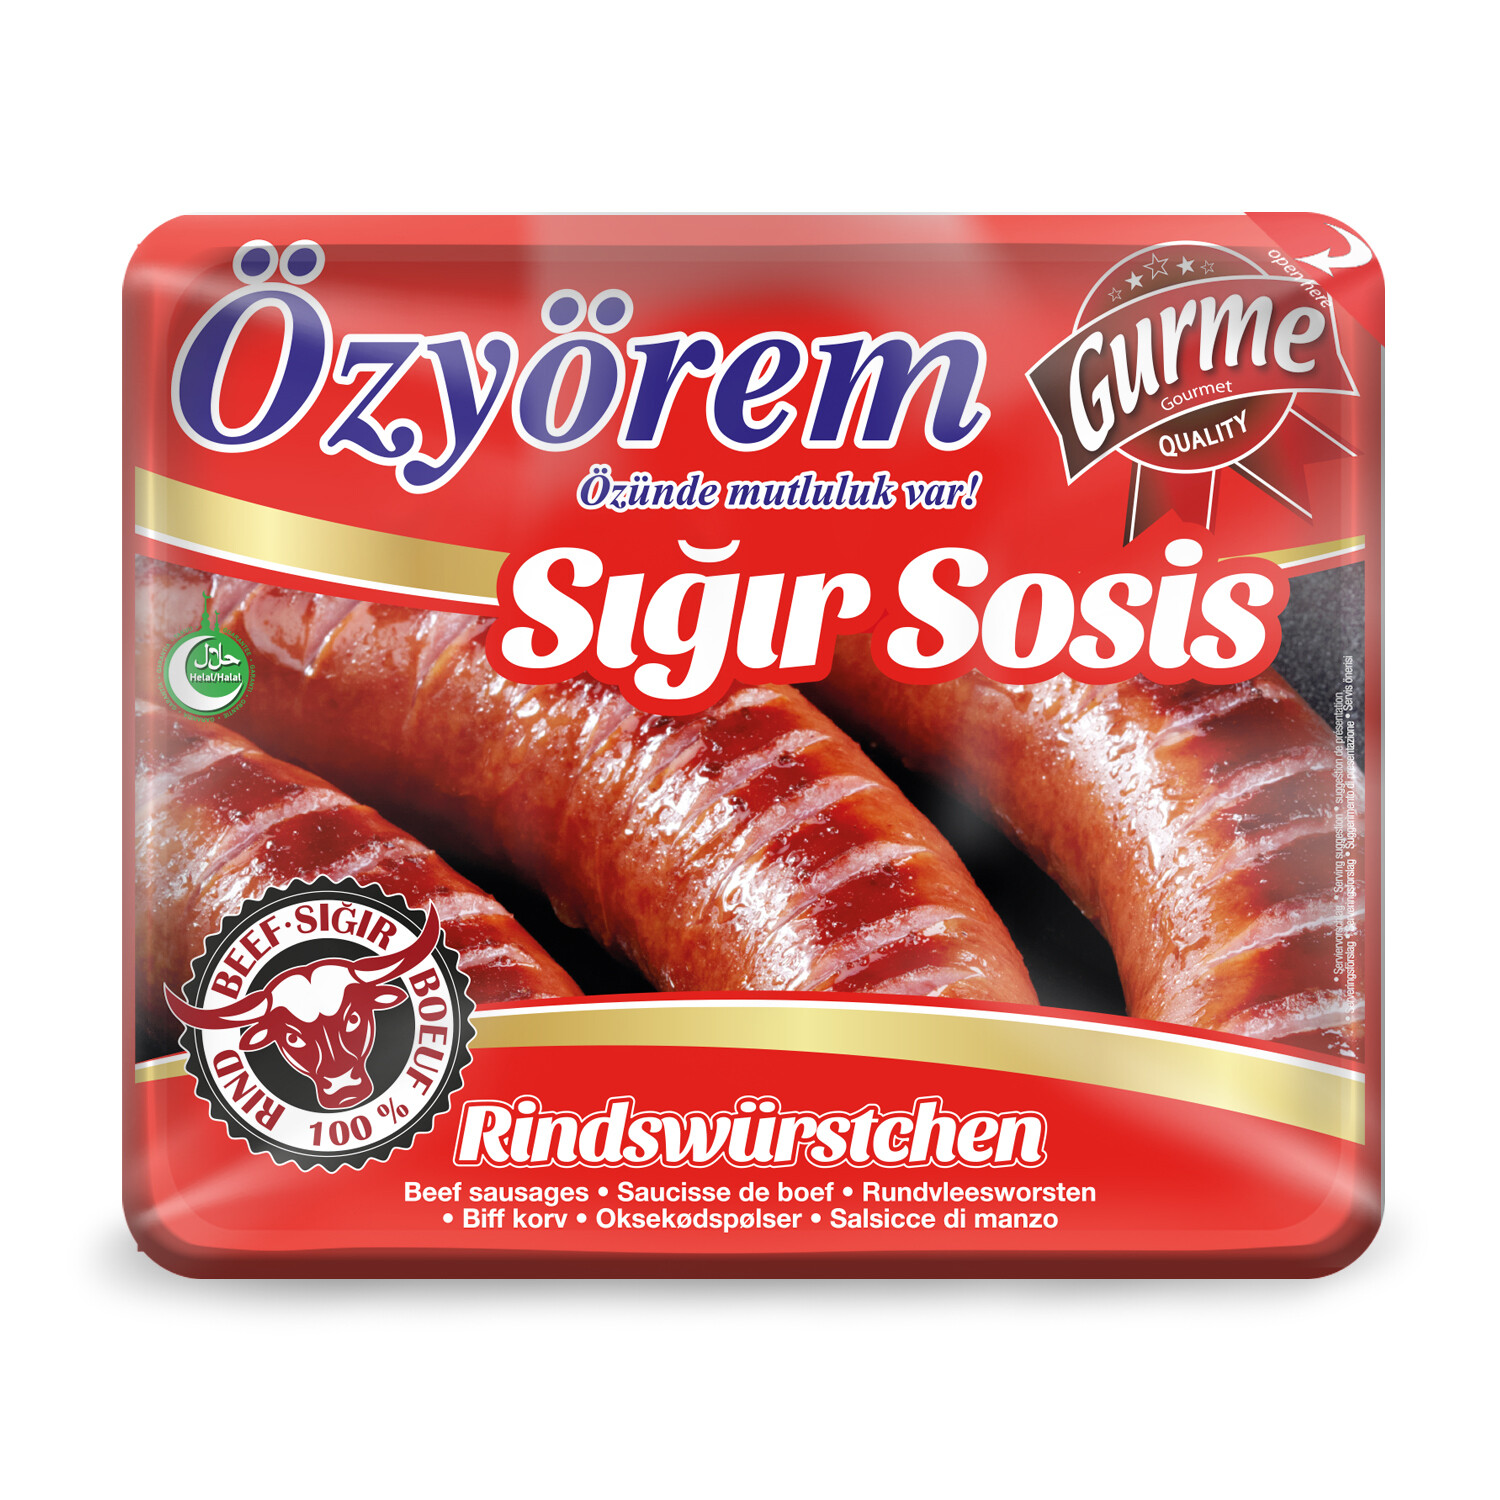 Türkische Rindfleischwurst- Özyörem 500gr